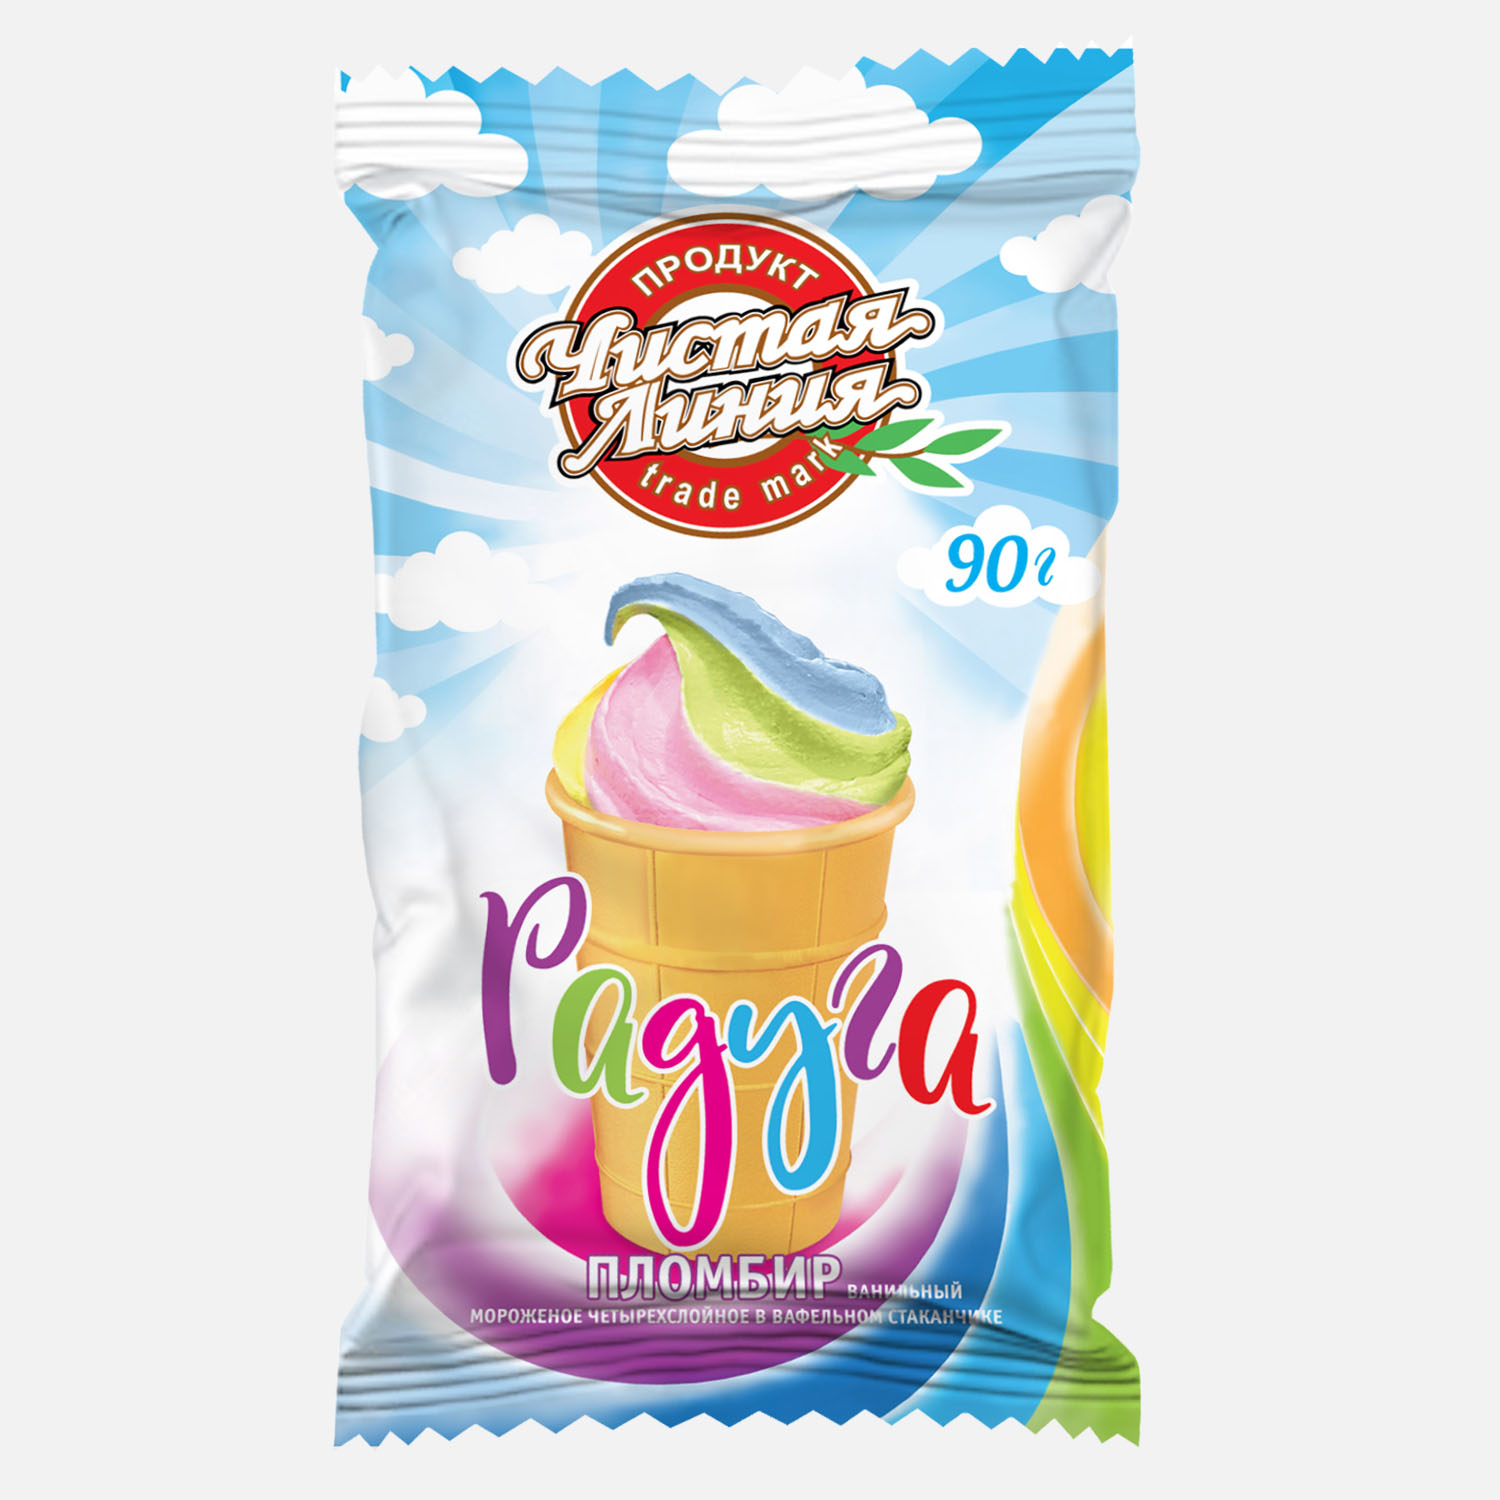 Мороженое Чистая линия  радуга, ванильное, стаканчик, 90 г